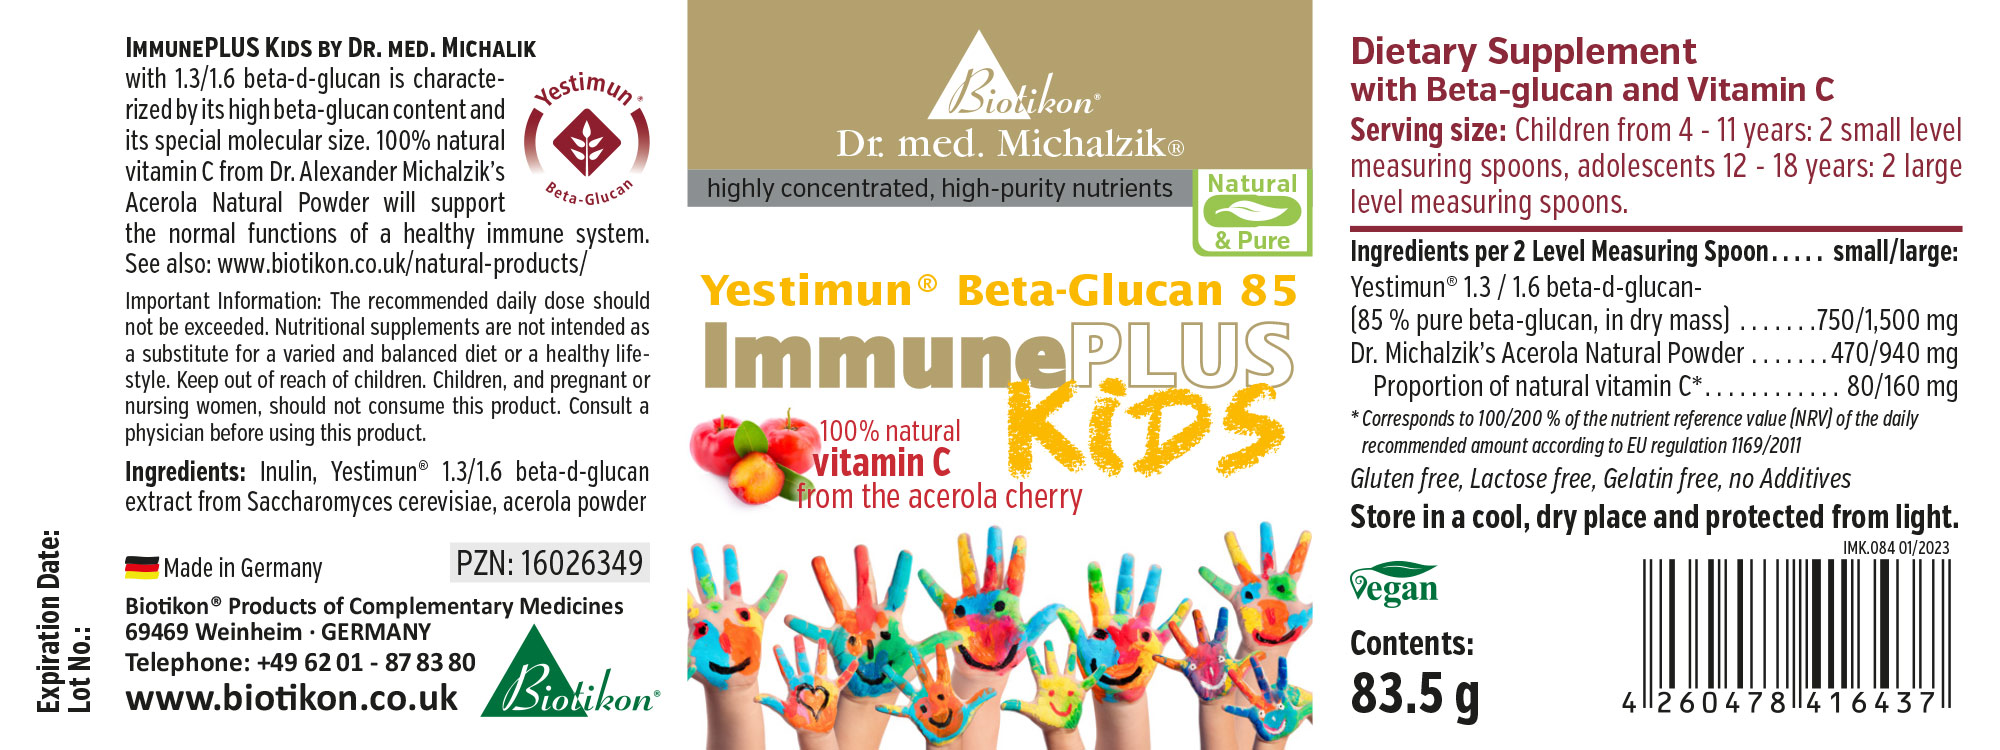 ImmunePLUS Kids by Dr. med. Michalzik